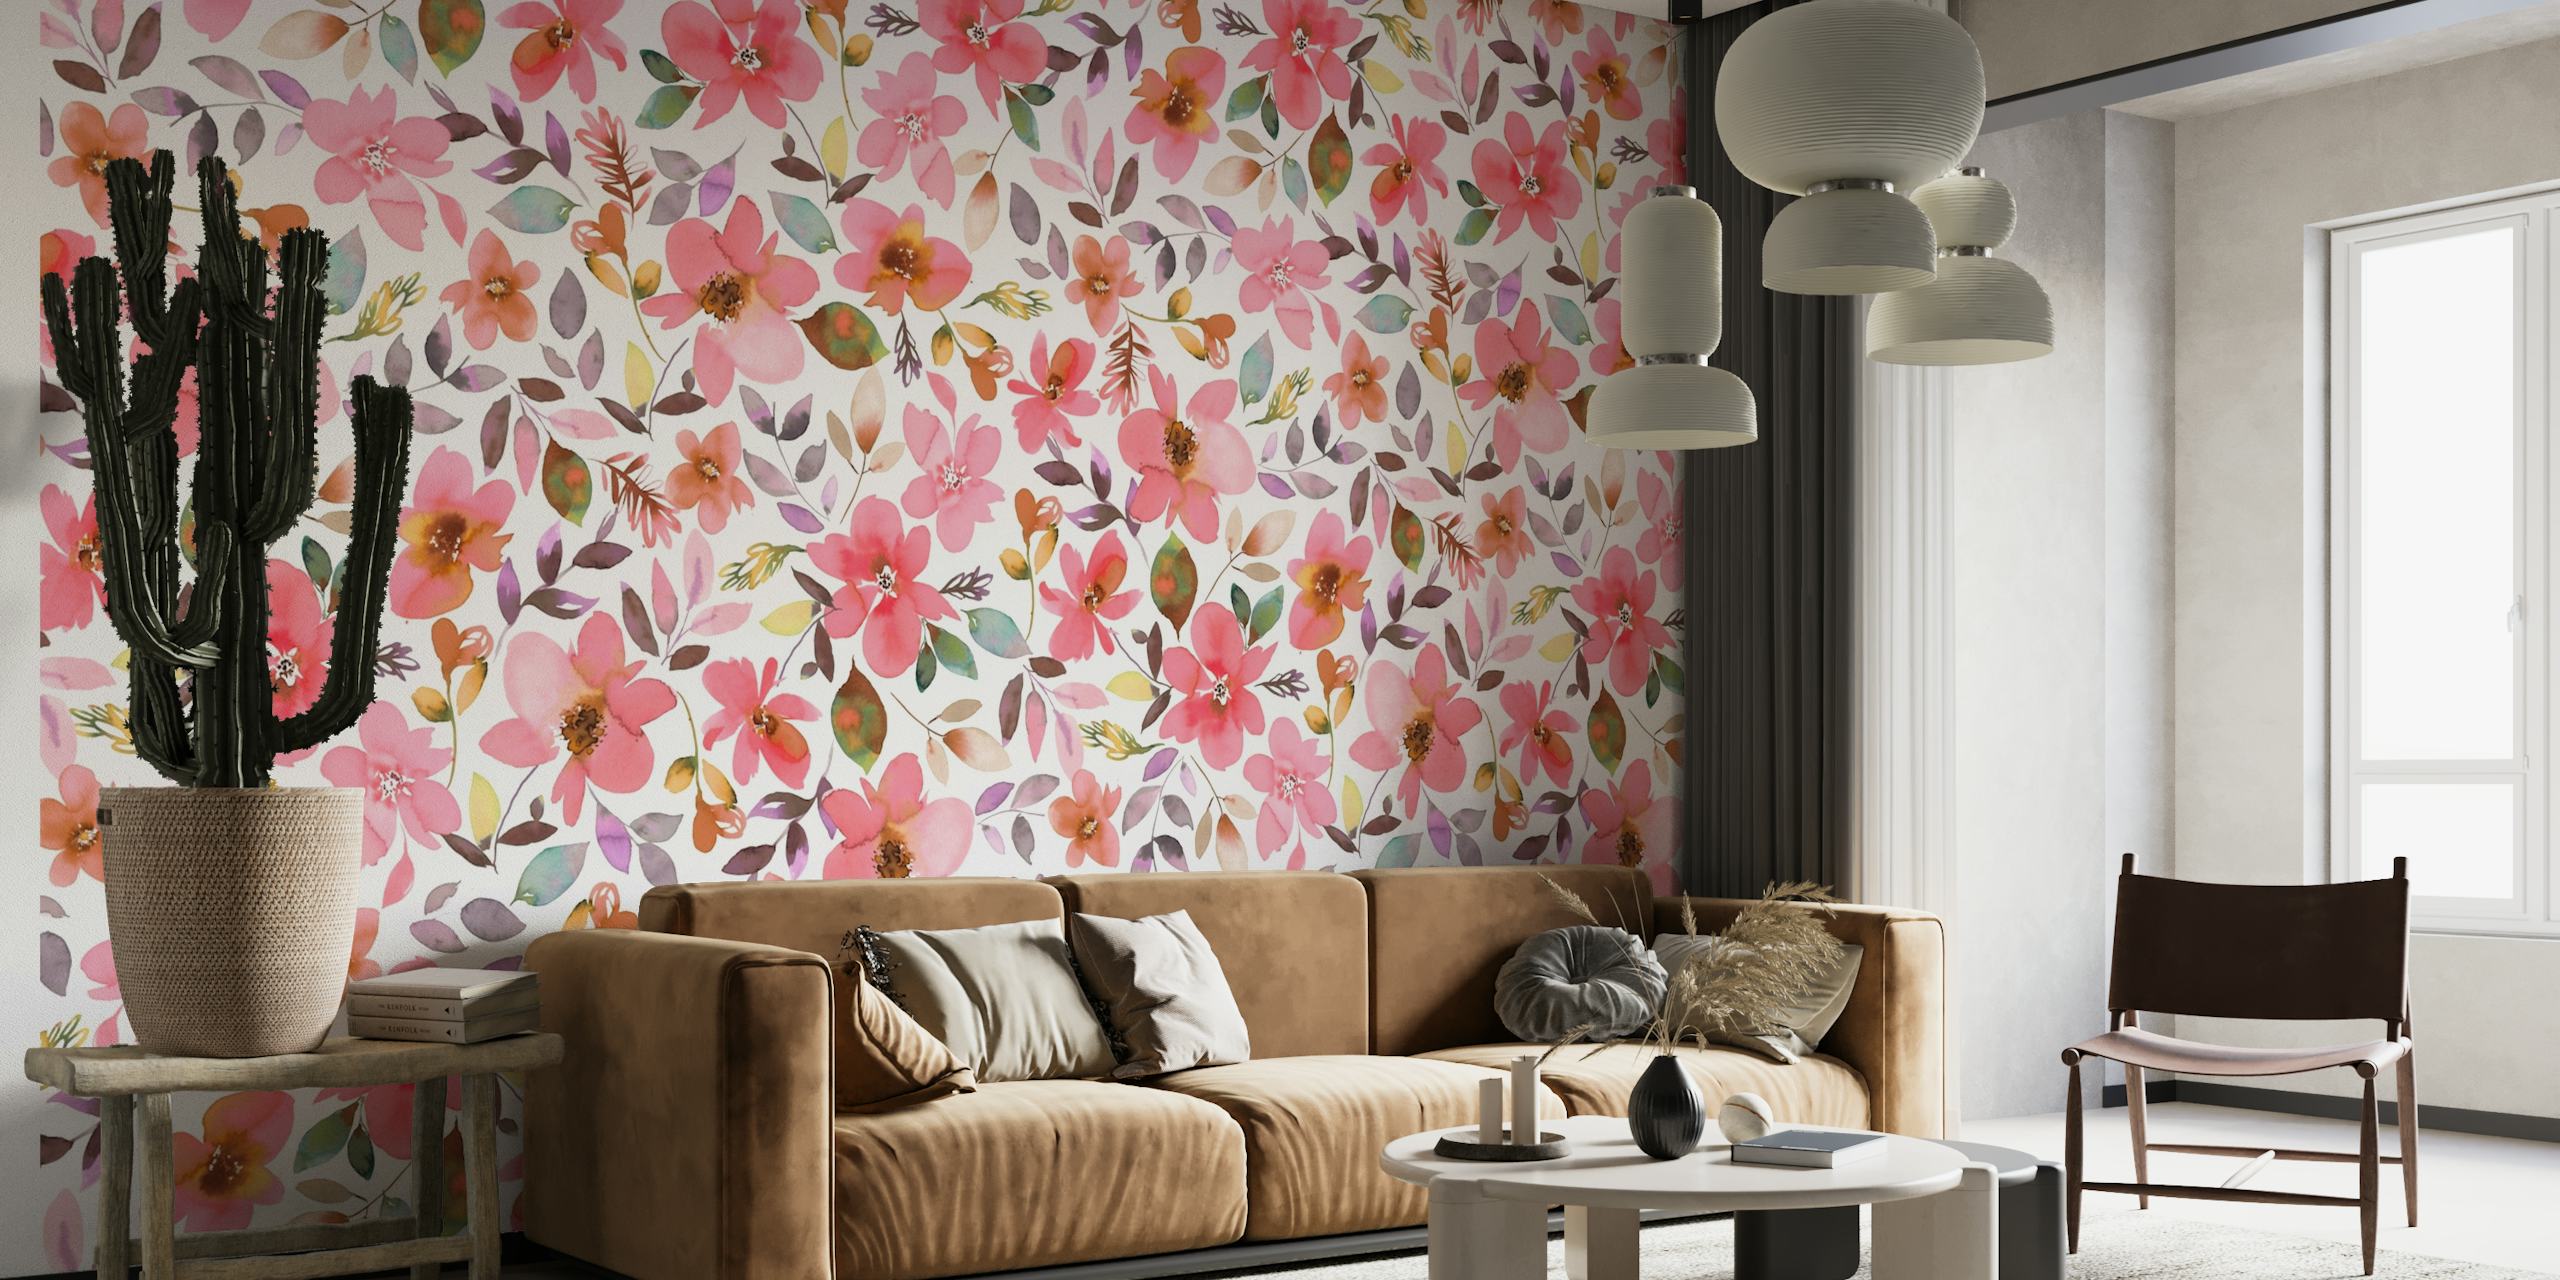 Um mural de parede colorido com flores de coral e plantas tropicais criando um animado tema de verão.